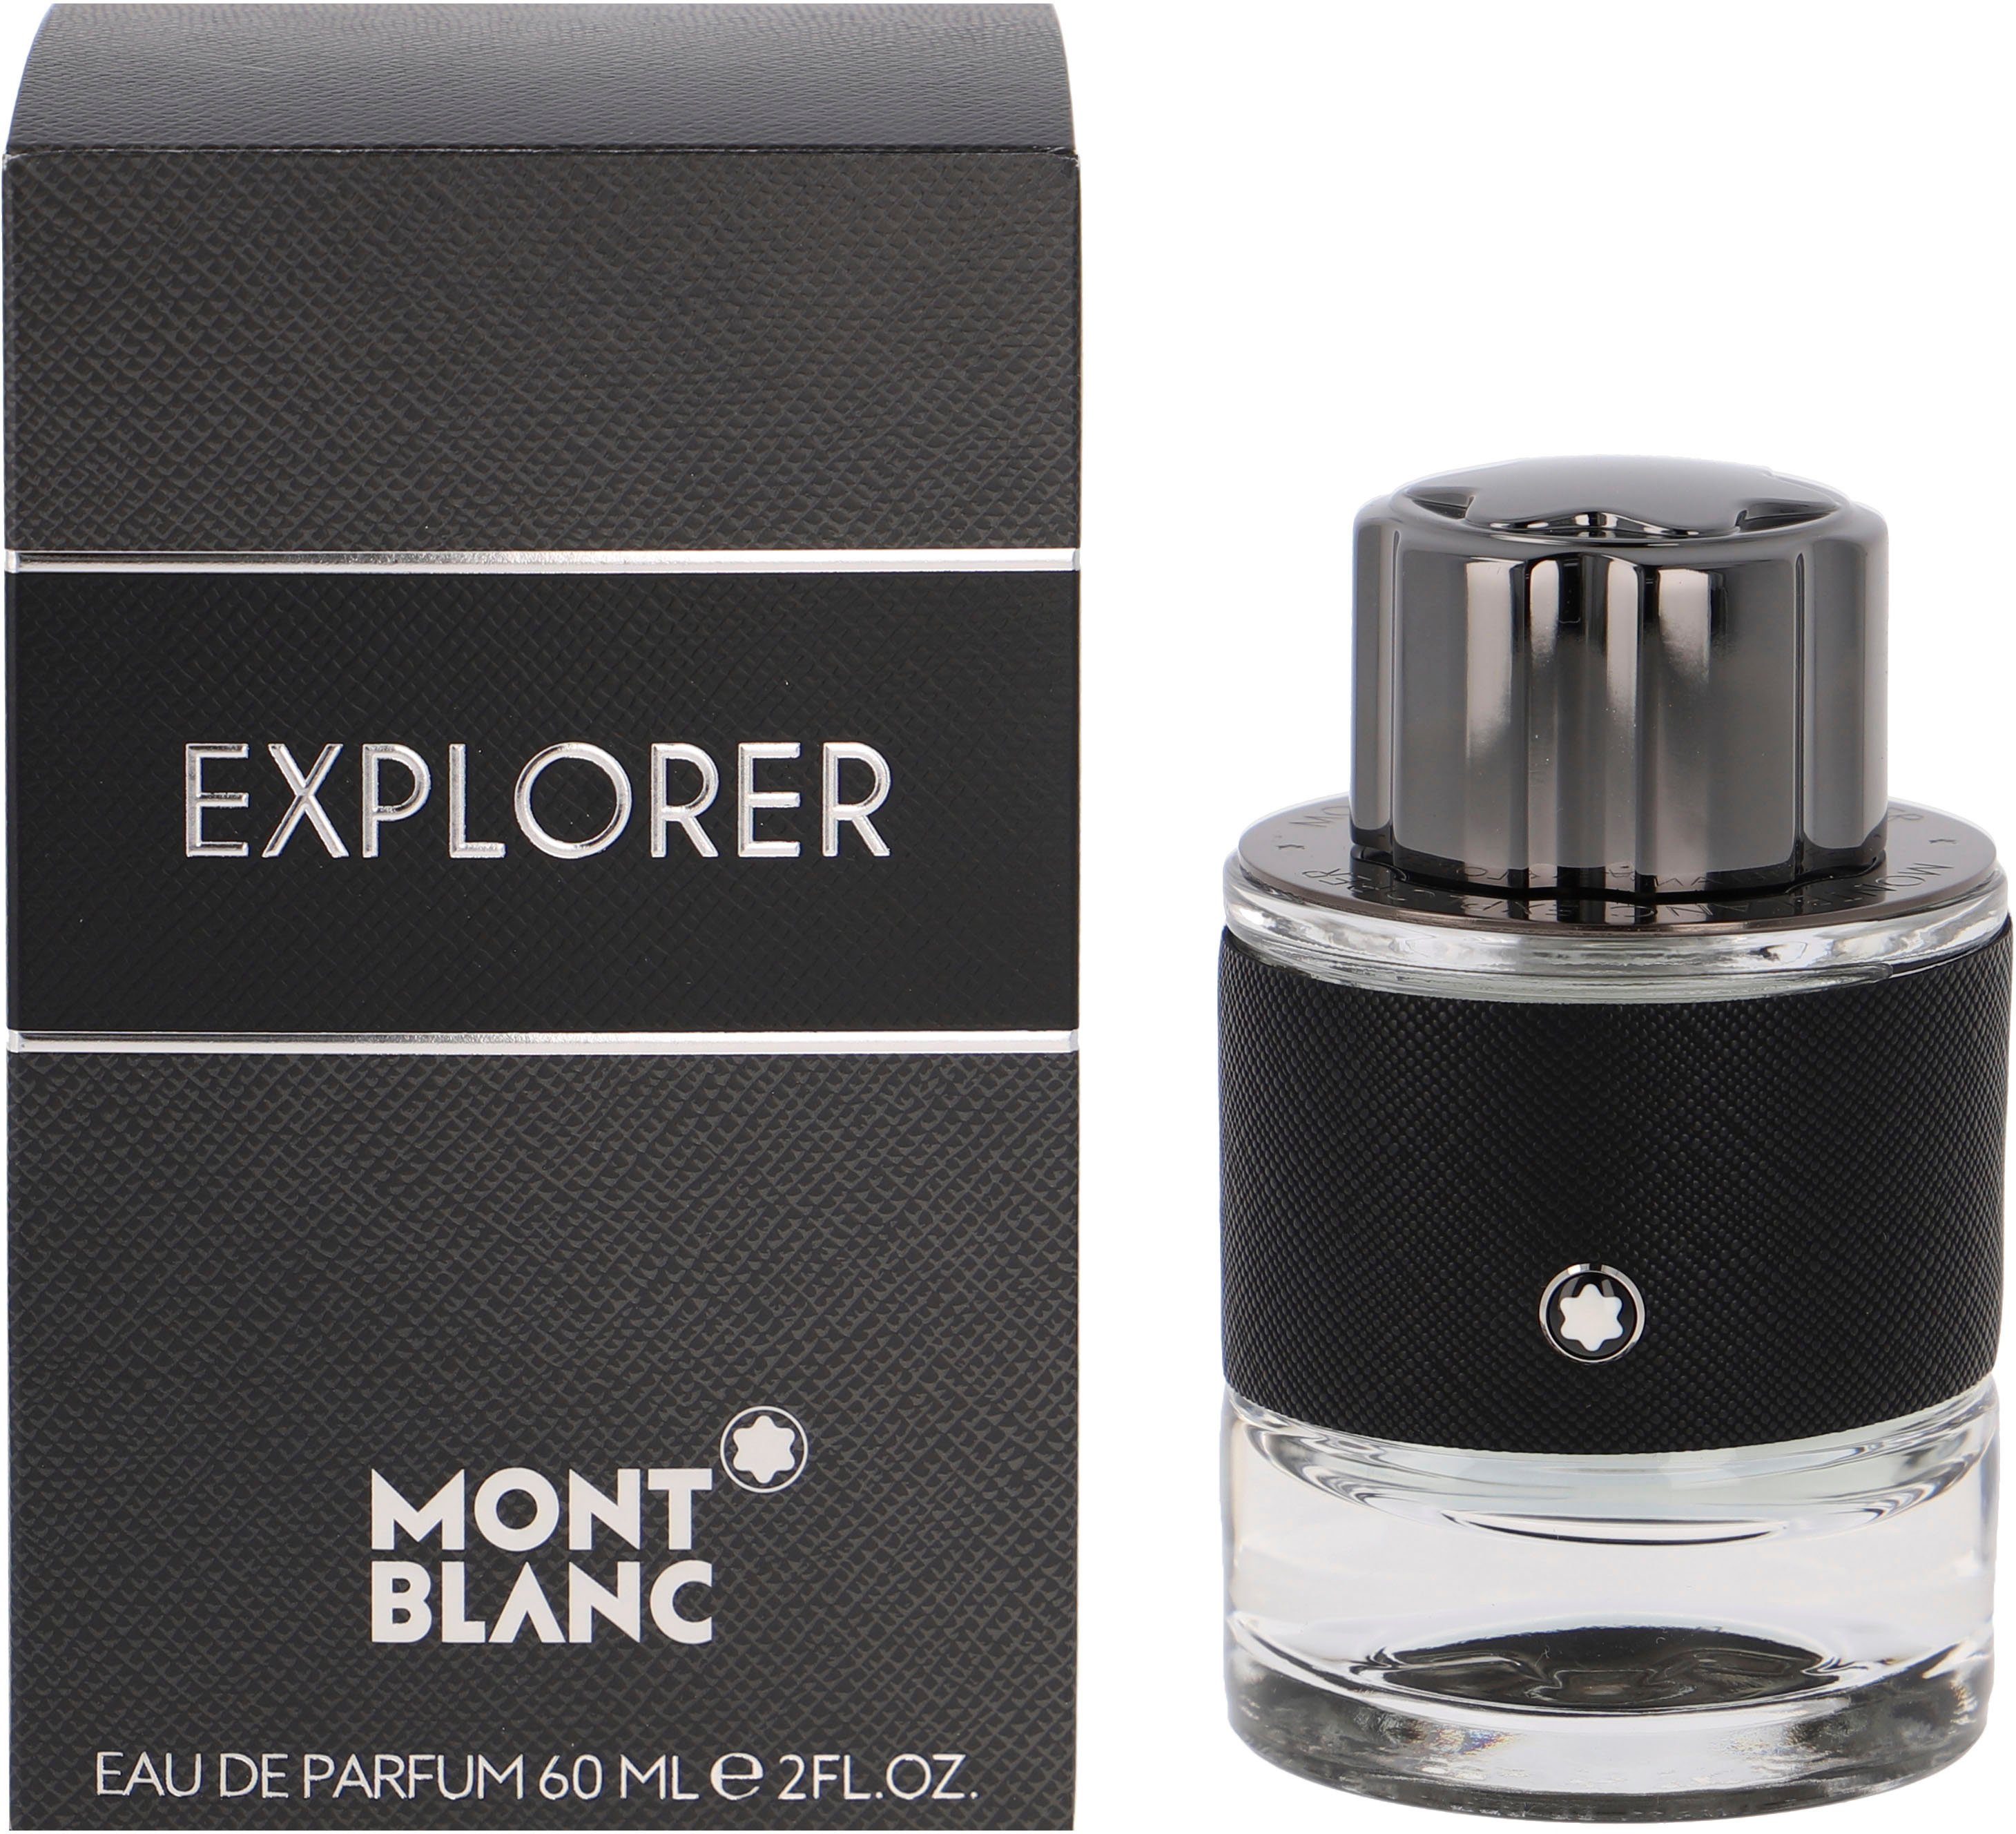 MONTBLANC Eau de Parfum Explorer